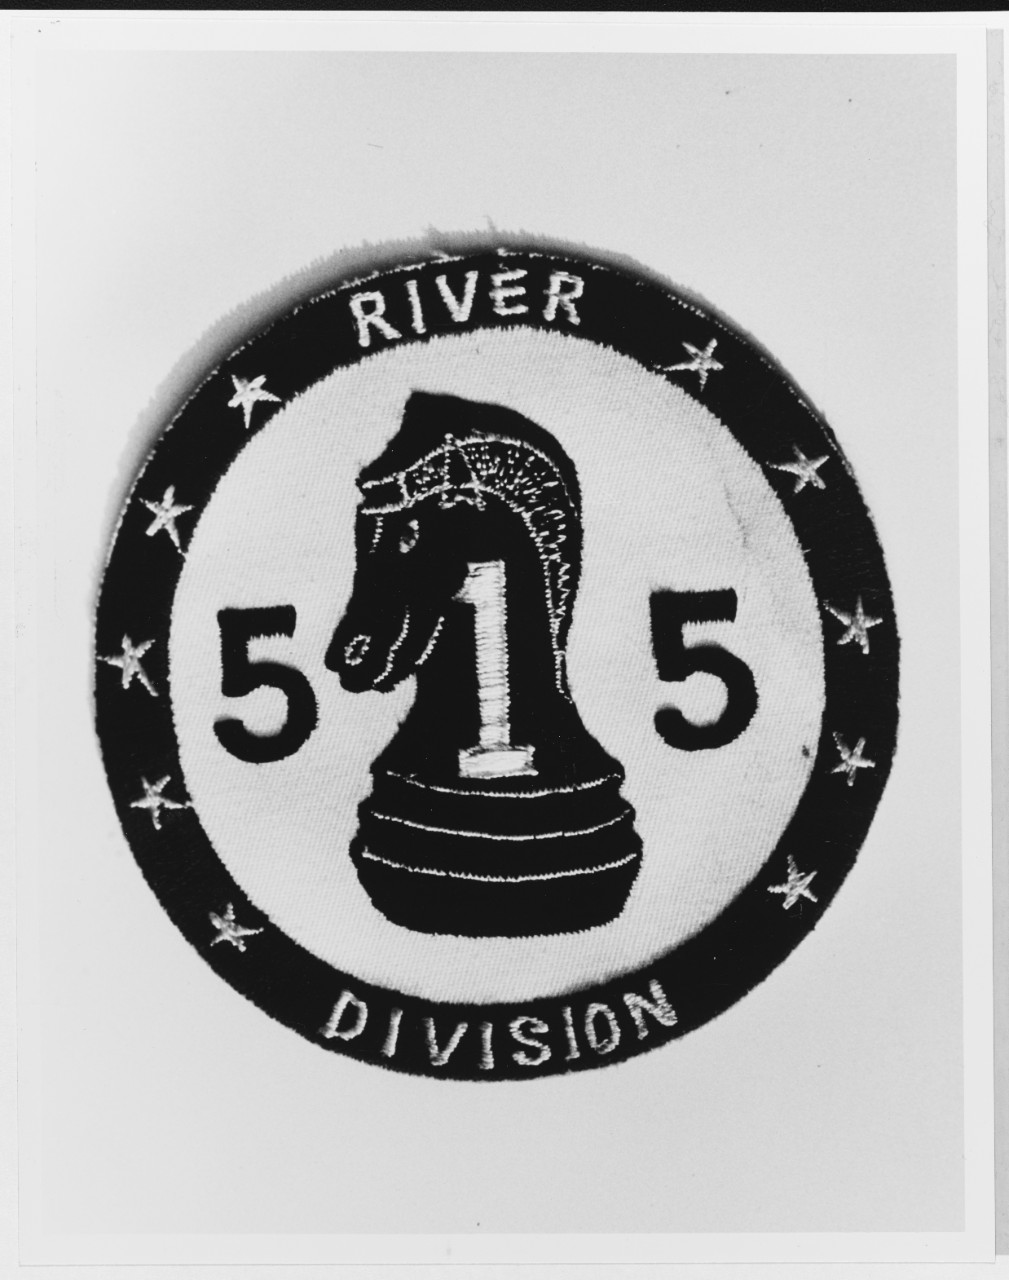 Insignia, River Division 515